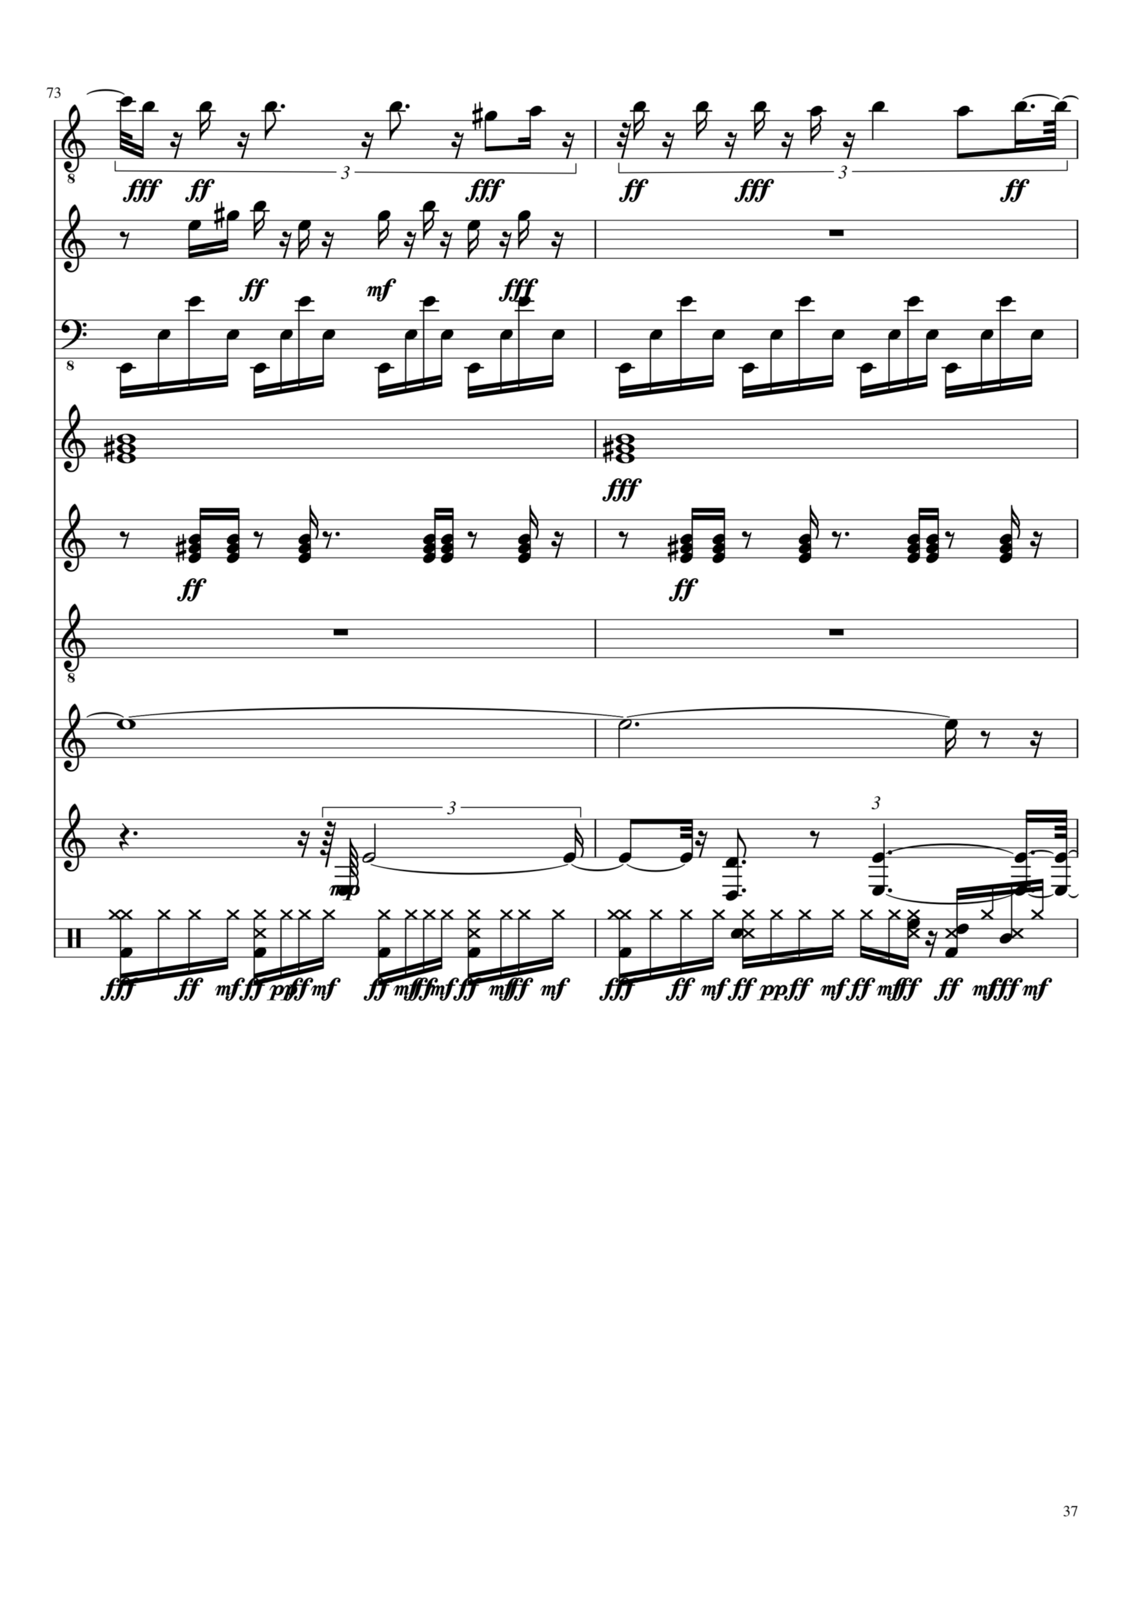 Vechnaya prizrachnaya vstrechnaya slide, Image 12